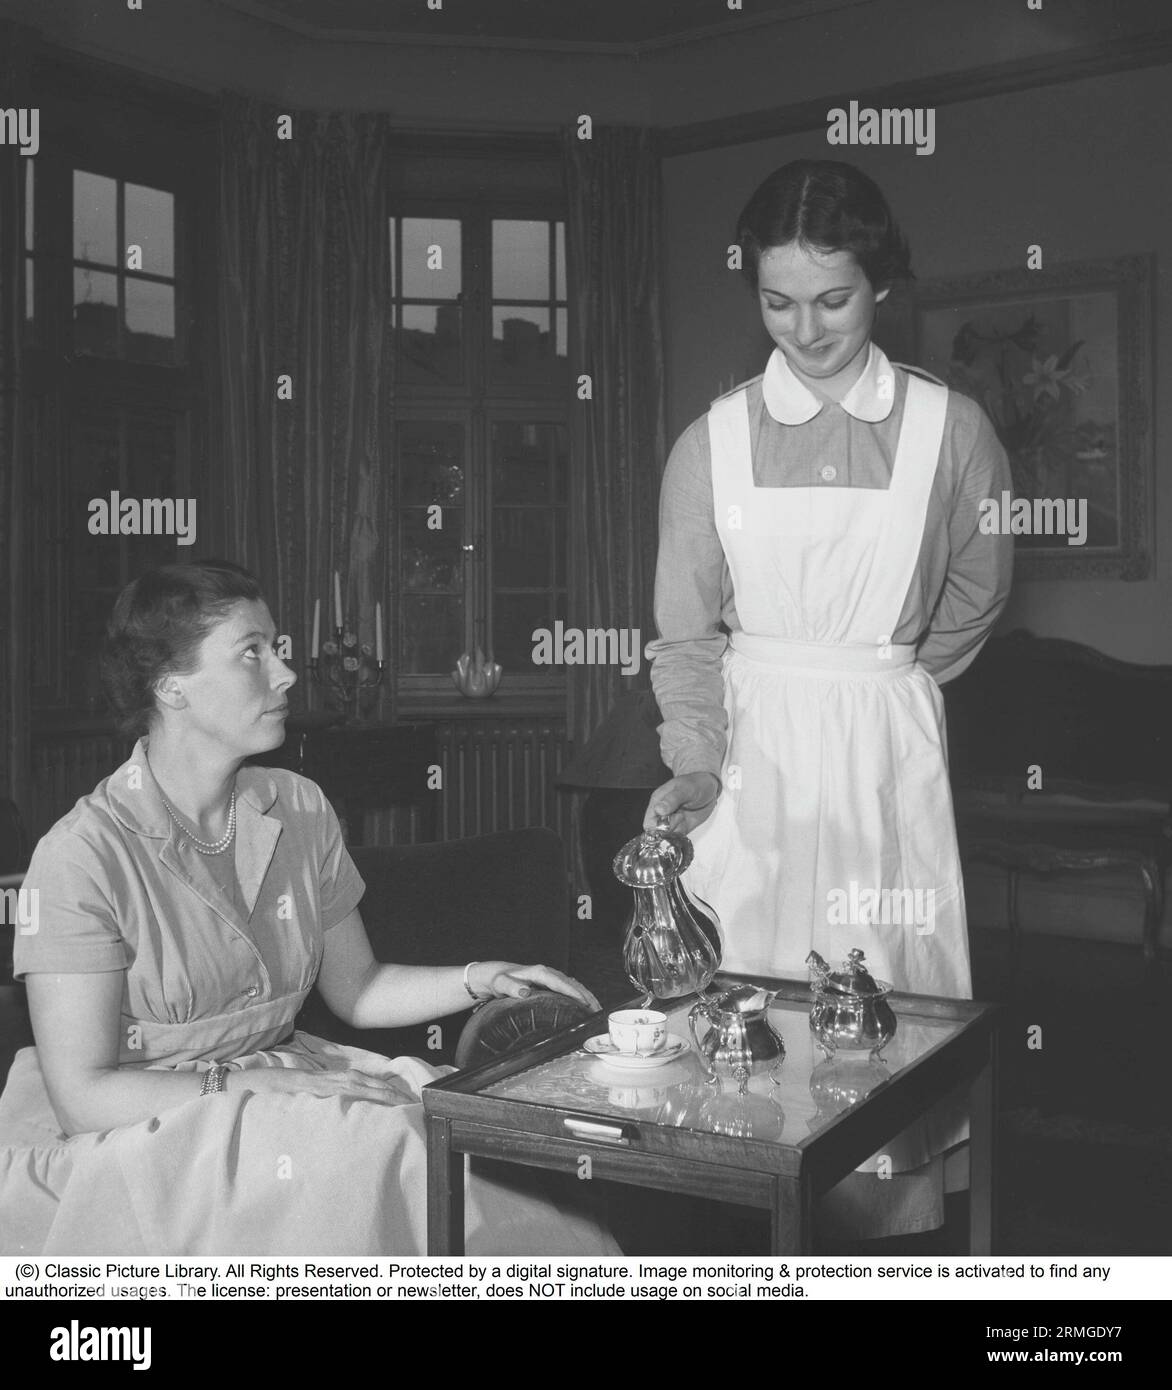 Leben in den 1950er Jahren Eine junge Frau, die als Dienstmädchen arbeitet, serviert einer Frau, die auf der Couch sitzt, Tee oder Kaffee. Sie trägt eine weiße Schürze. Schweden 1955. Kristoffersson ref BU6-8 Stockfoto